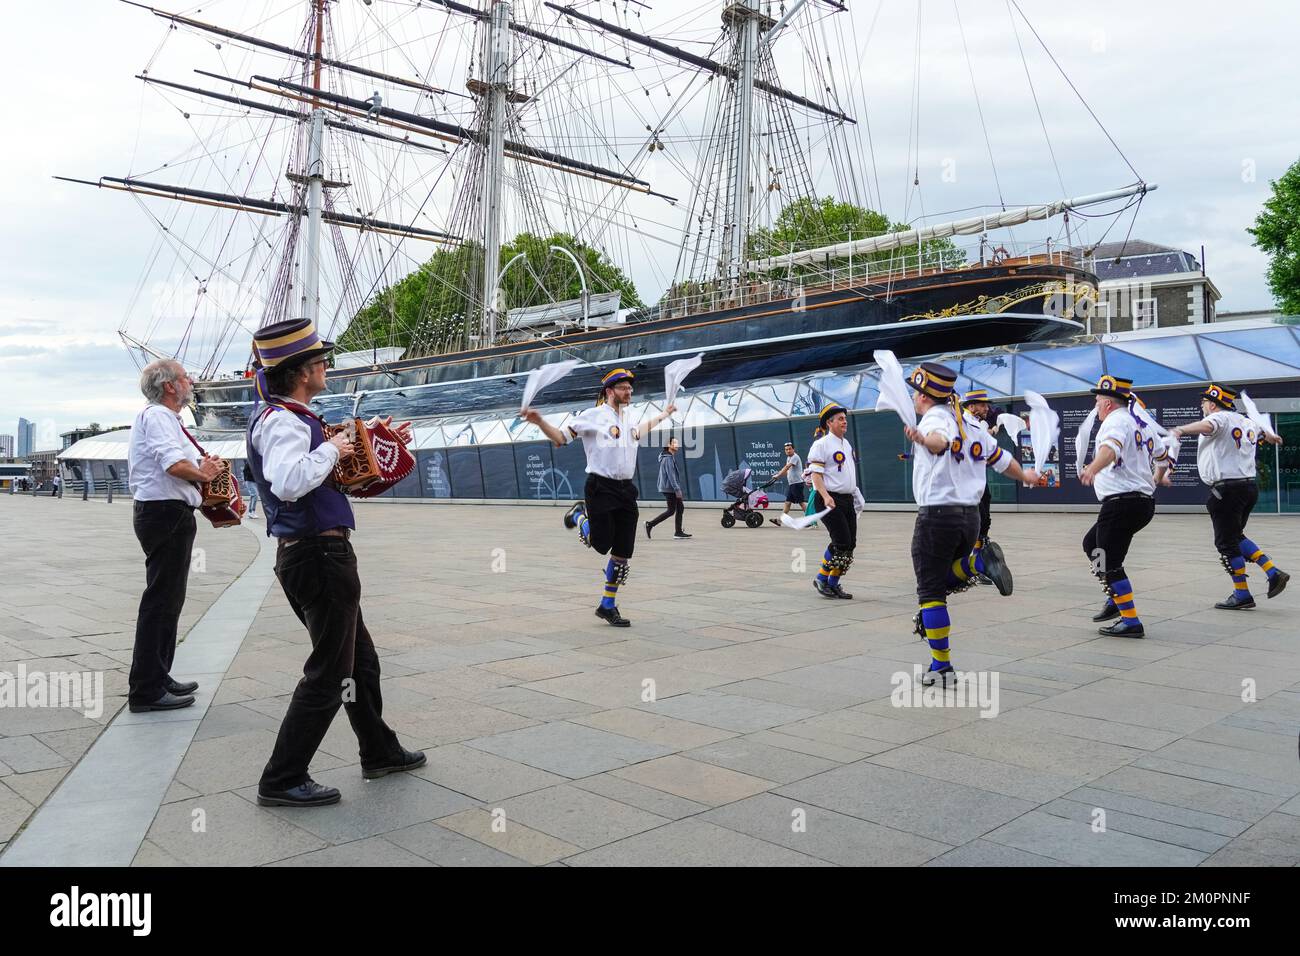 Morris Dancers devant le bateau de coupe Cutty Sark à Greenwich, Londres Angleterre Royaume-Uni Banque D'Images